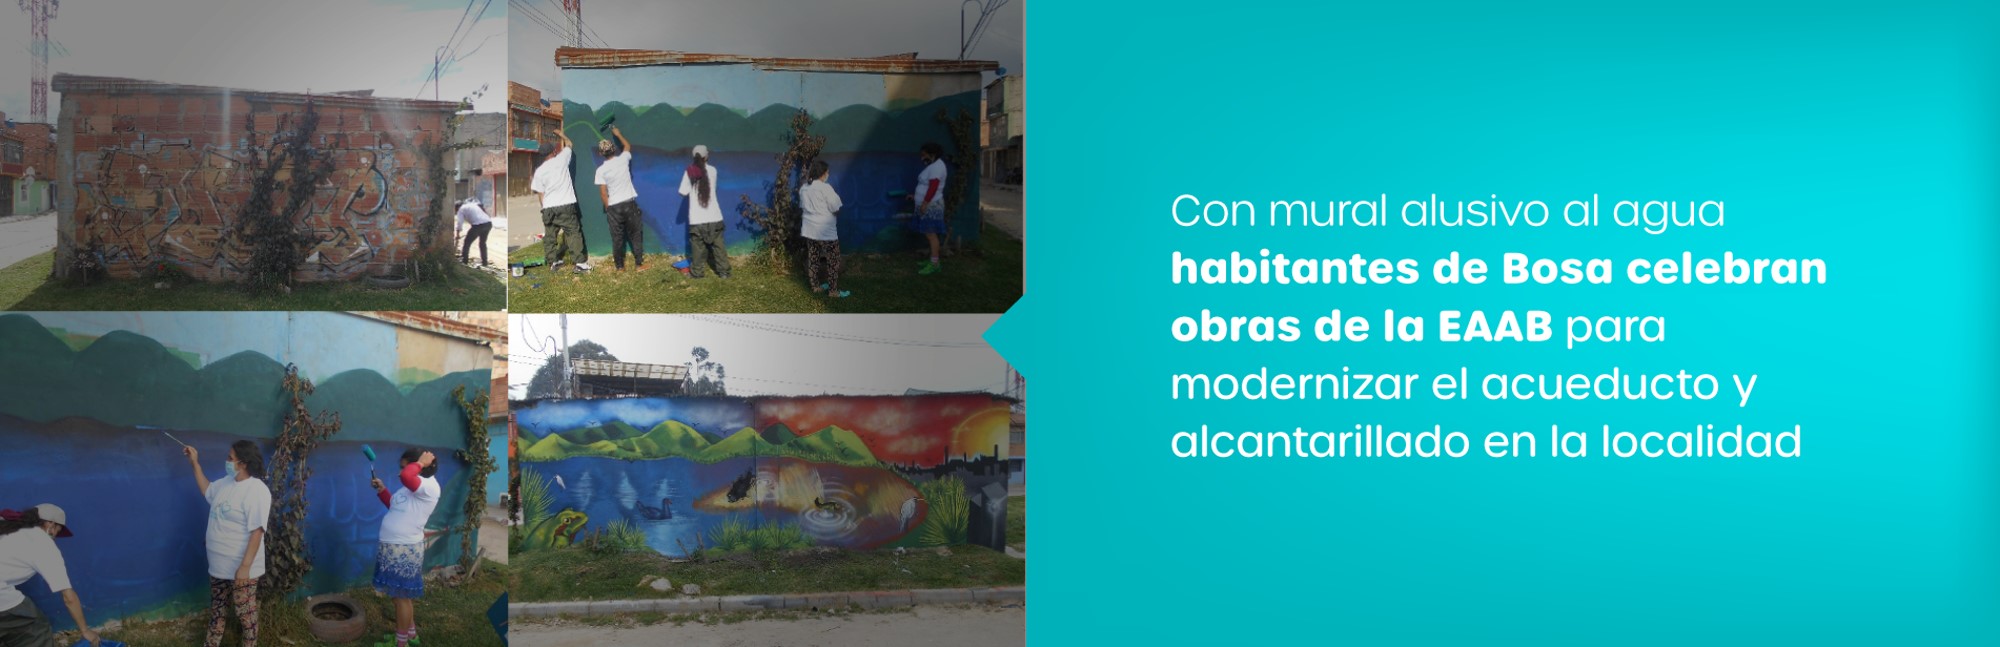 Con mural alusivo al agua habitantes de Bosa celebran obras  de la EAAB para modernizar el acueducto y alcantarillado en la localidad